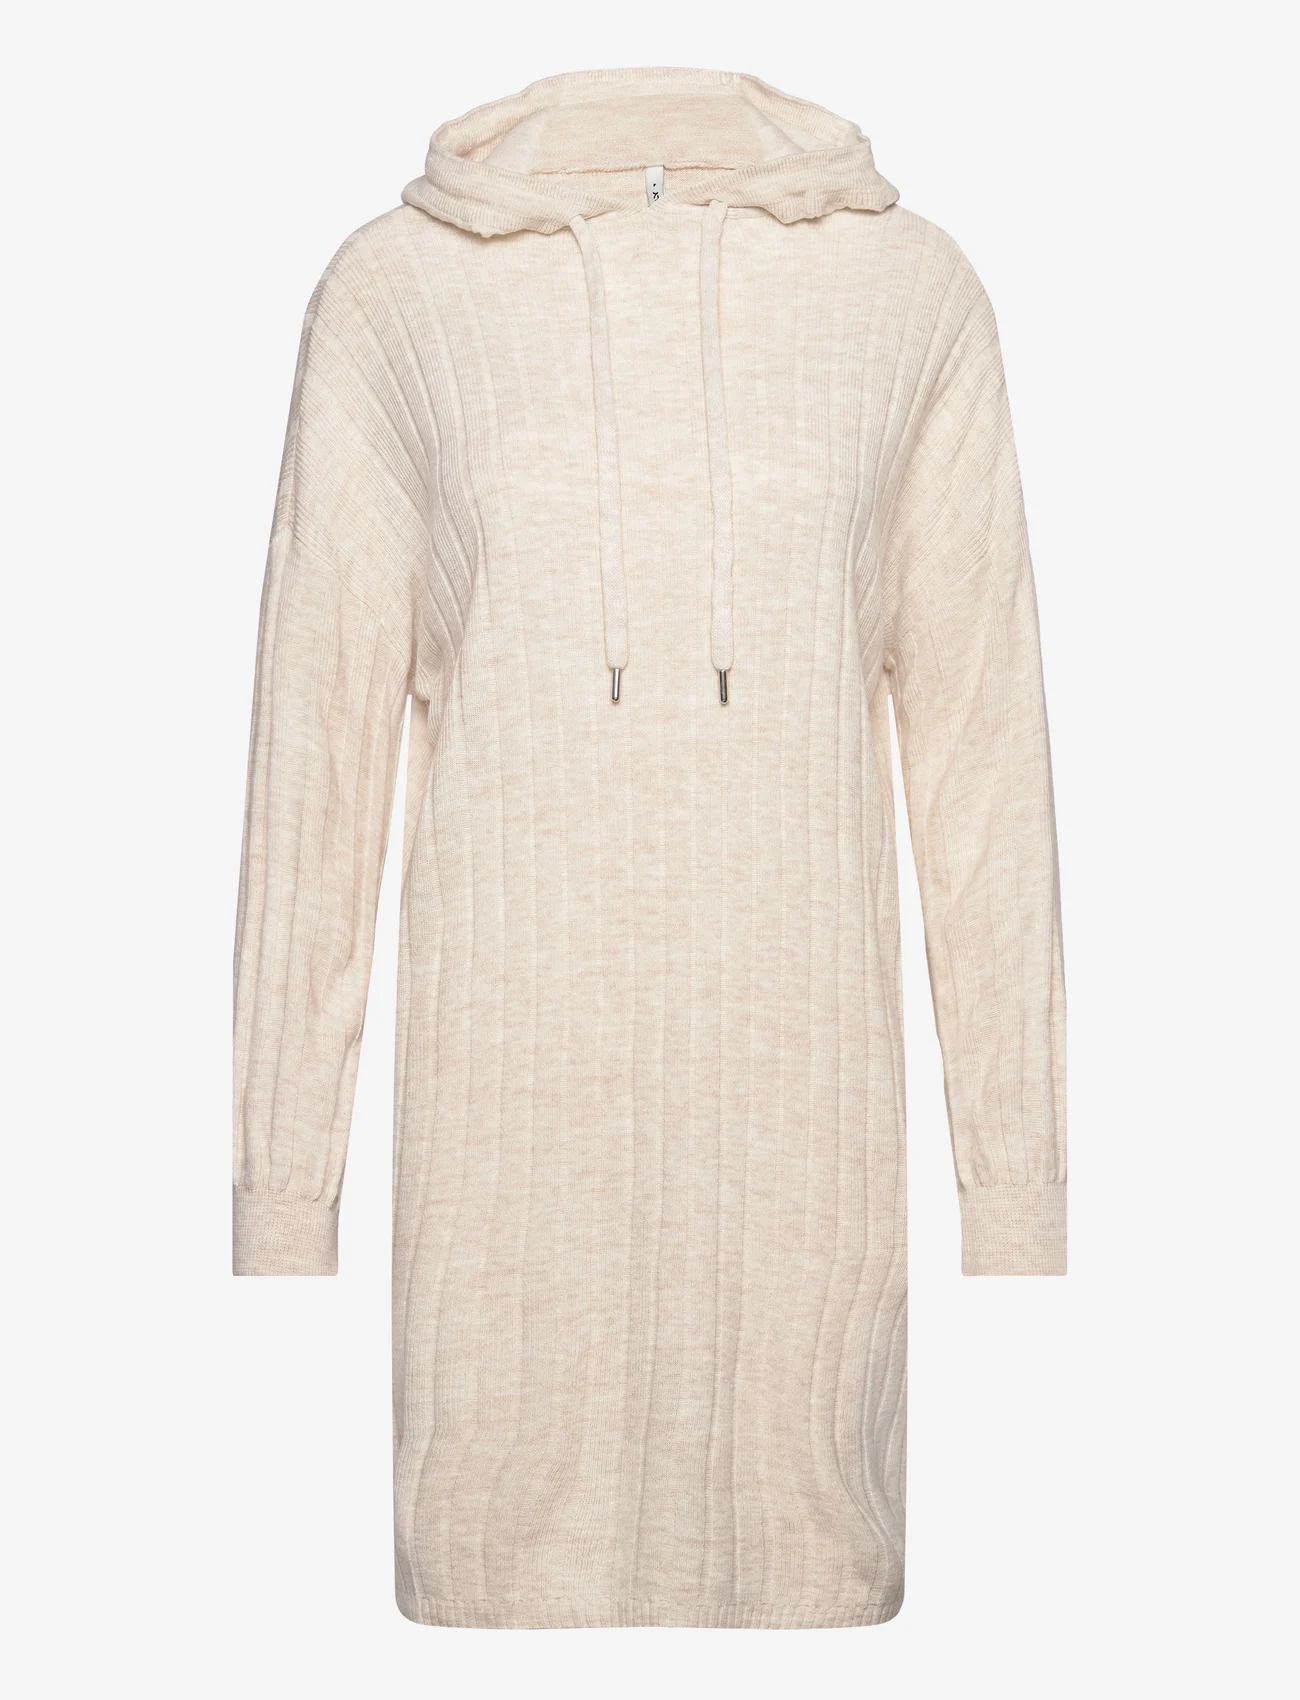 ONLY - ONLTESSA CAREY L/S HOOD DRESS NCA KNT - strikkede kjoler - pumice stone - 0